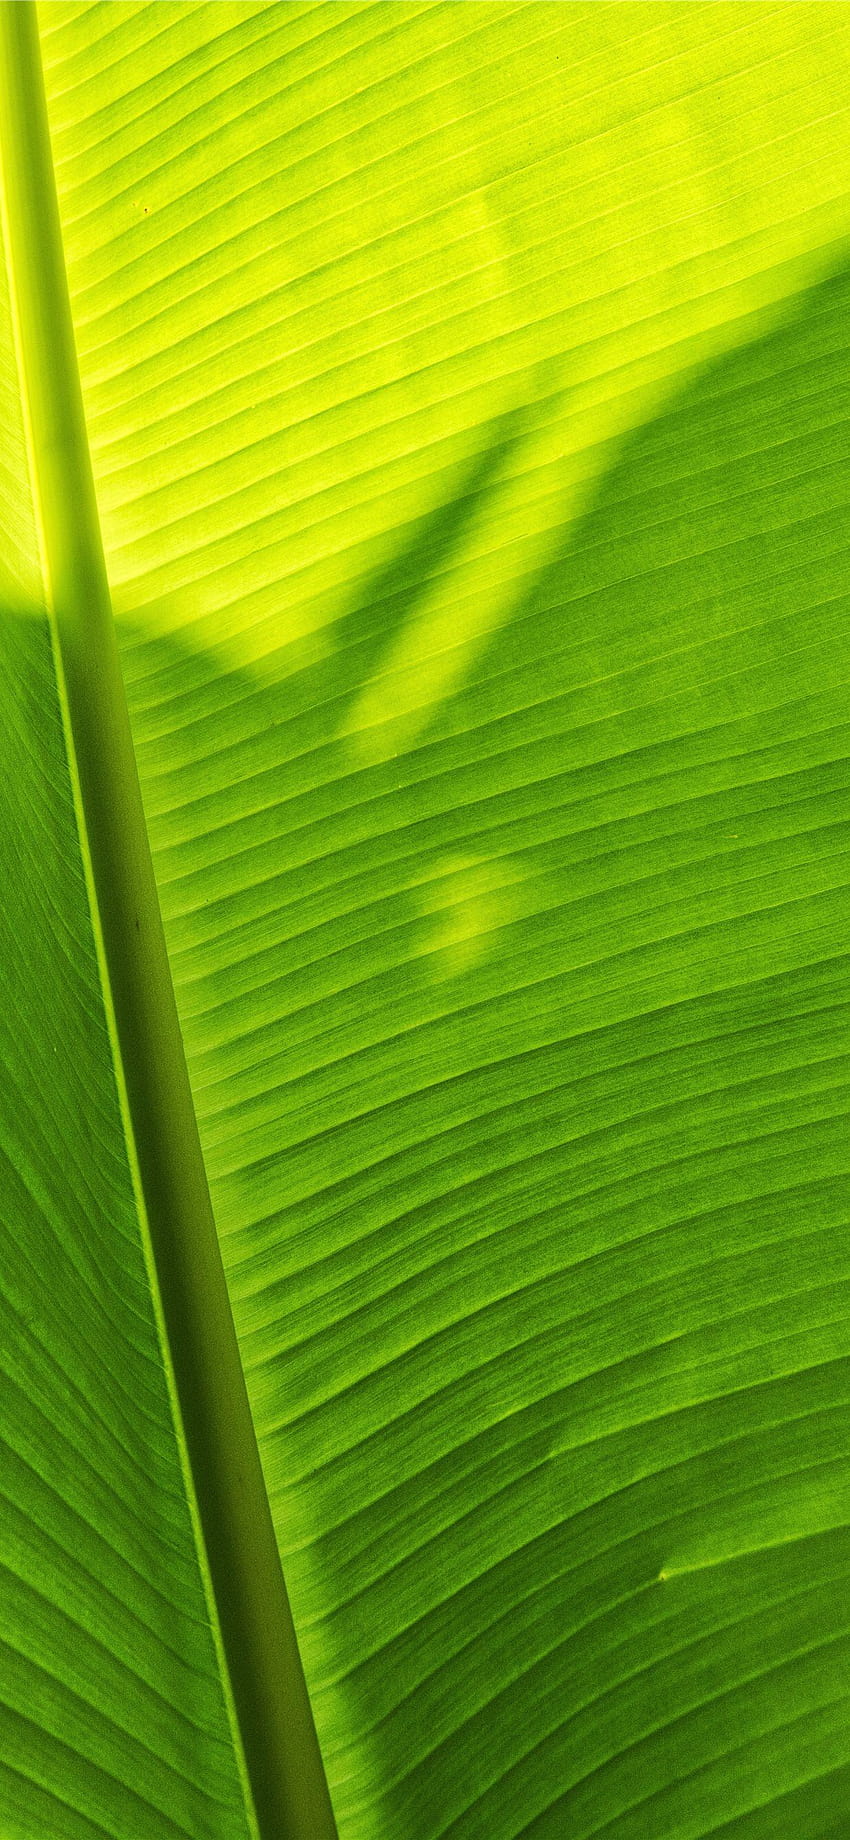 green banana leaf iPhone 11, banana leaves HD phone wallpaper